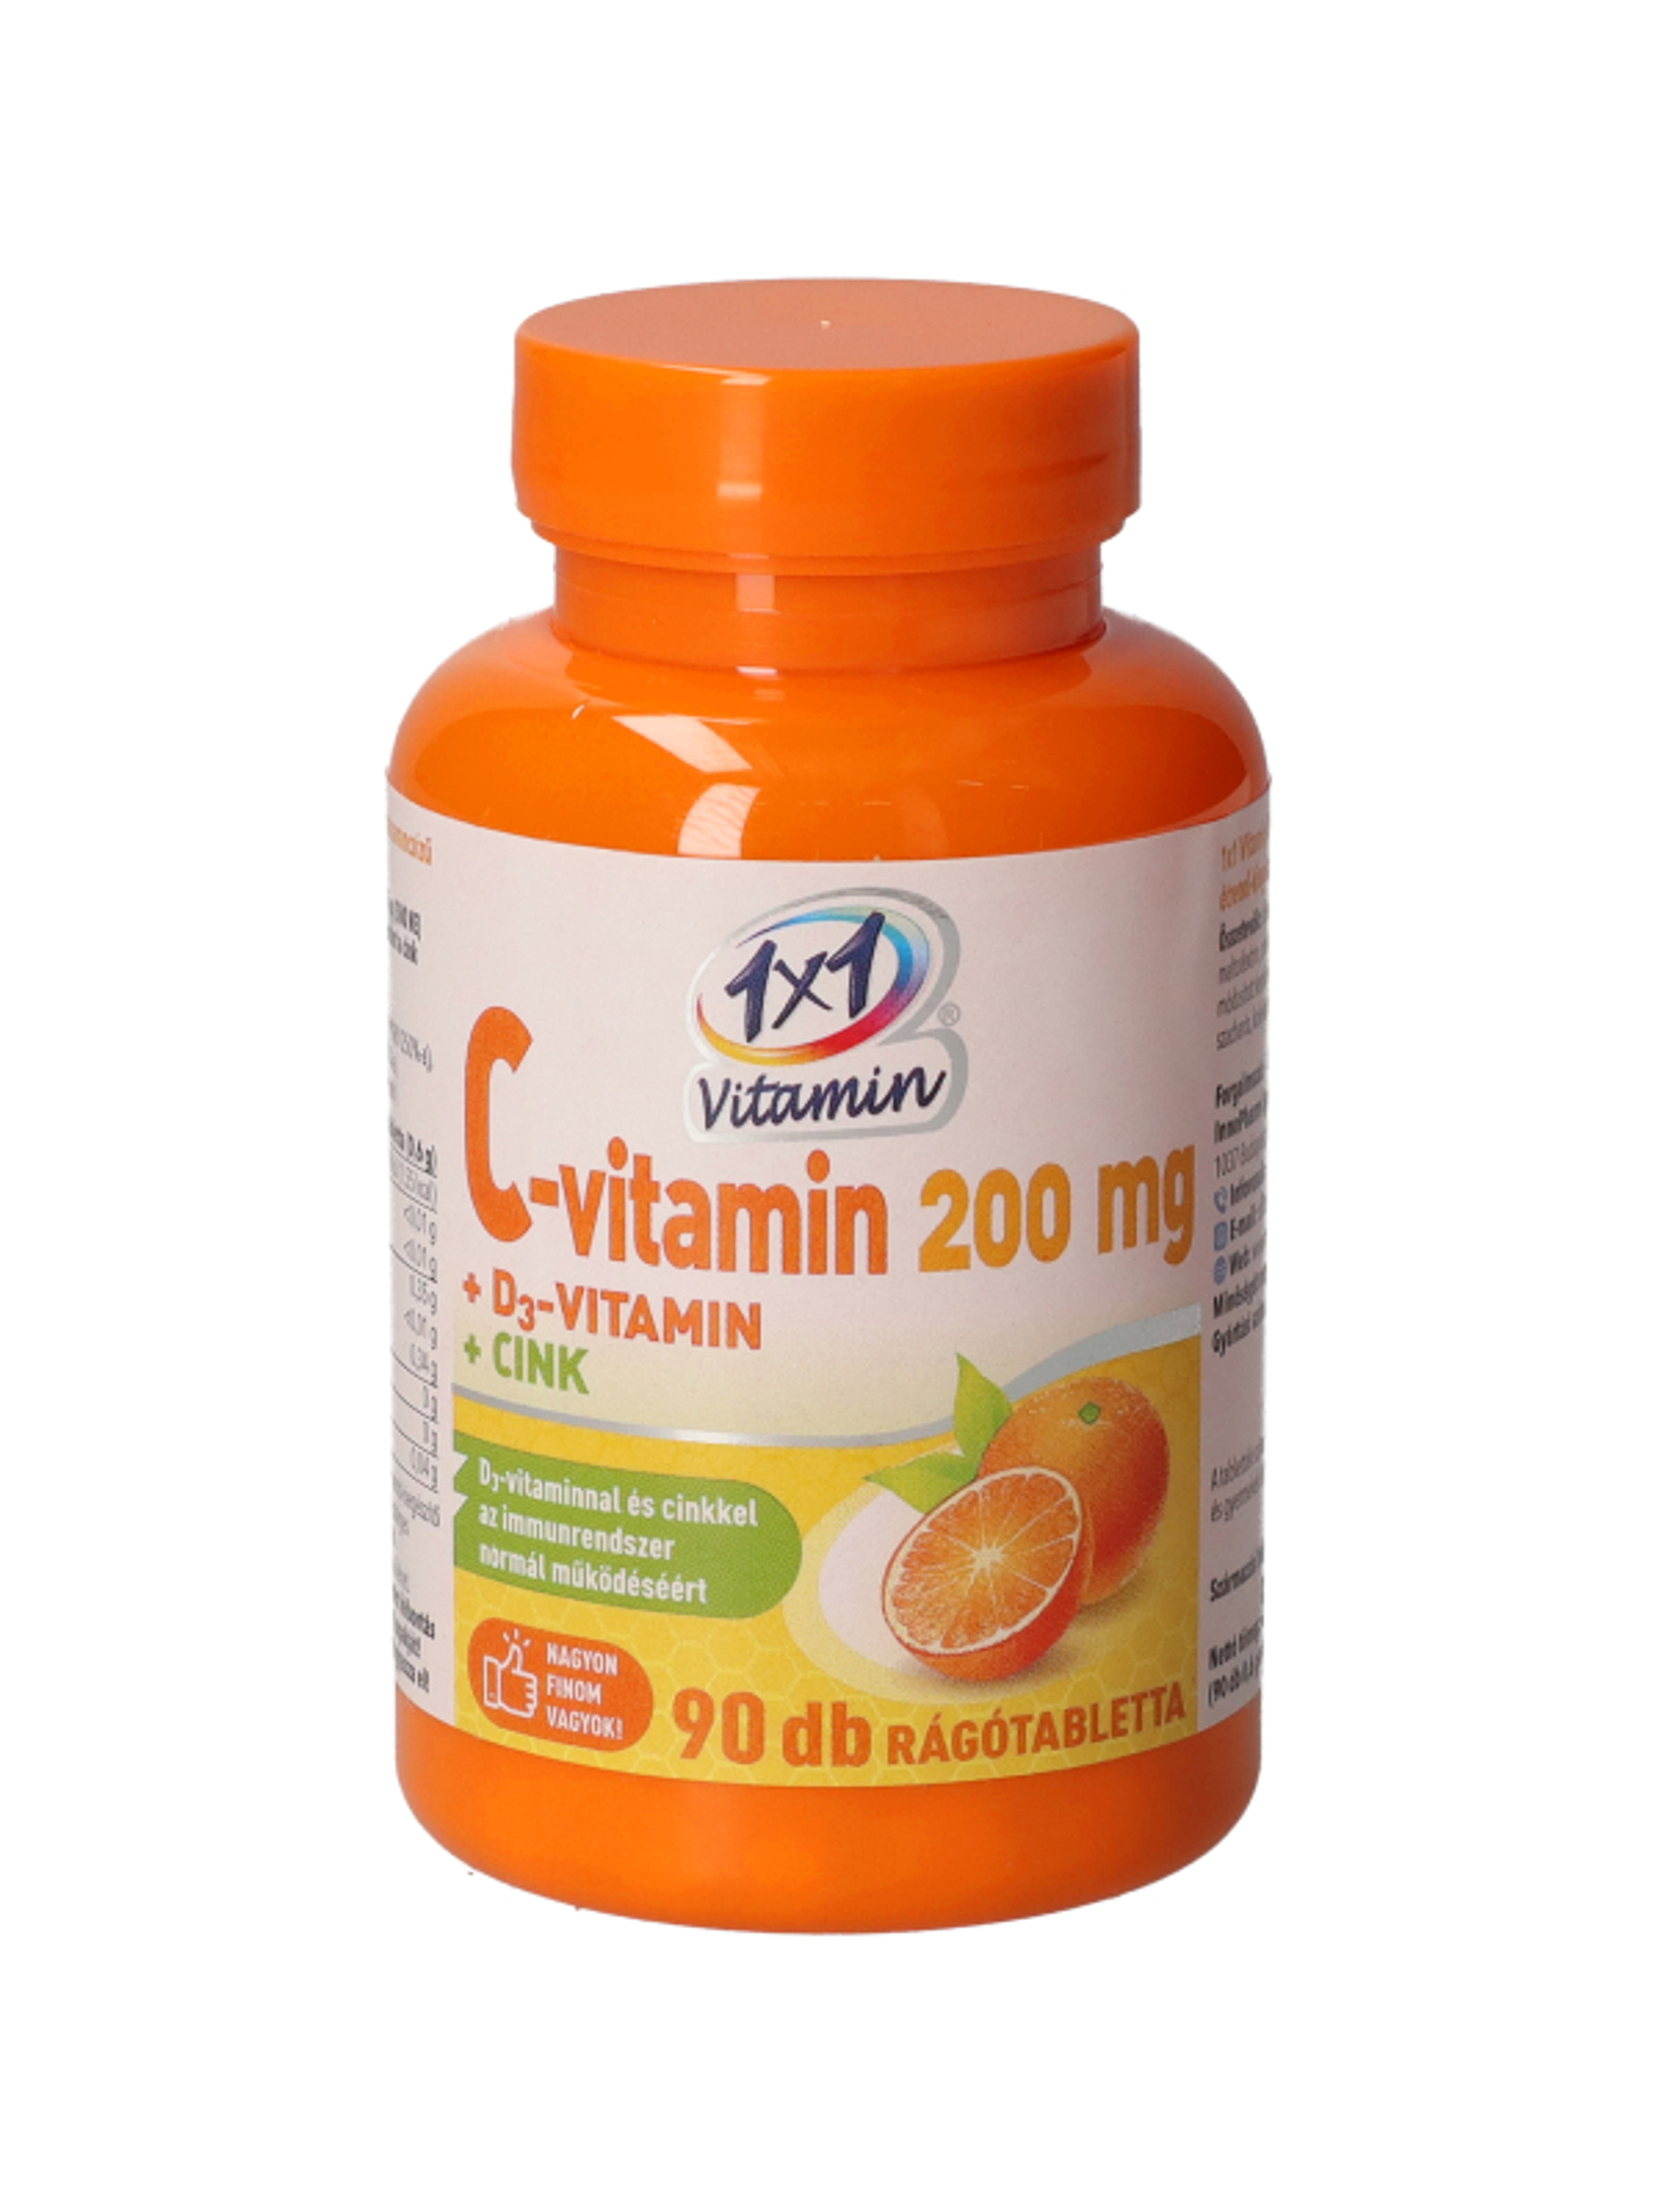 1x1 Vitaday C-vitamin 200 D3 Cink Rágótabletta - 90 db-1